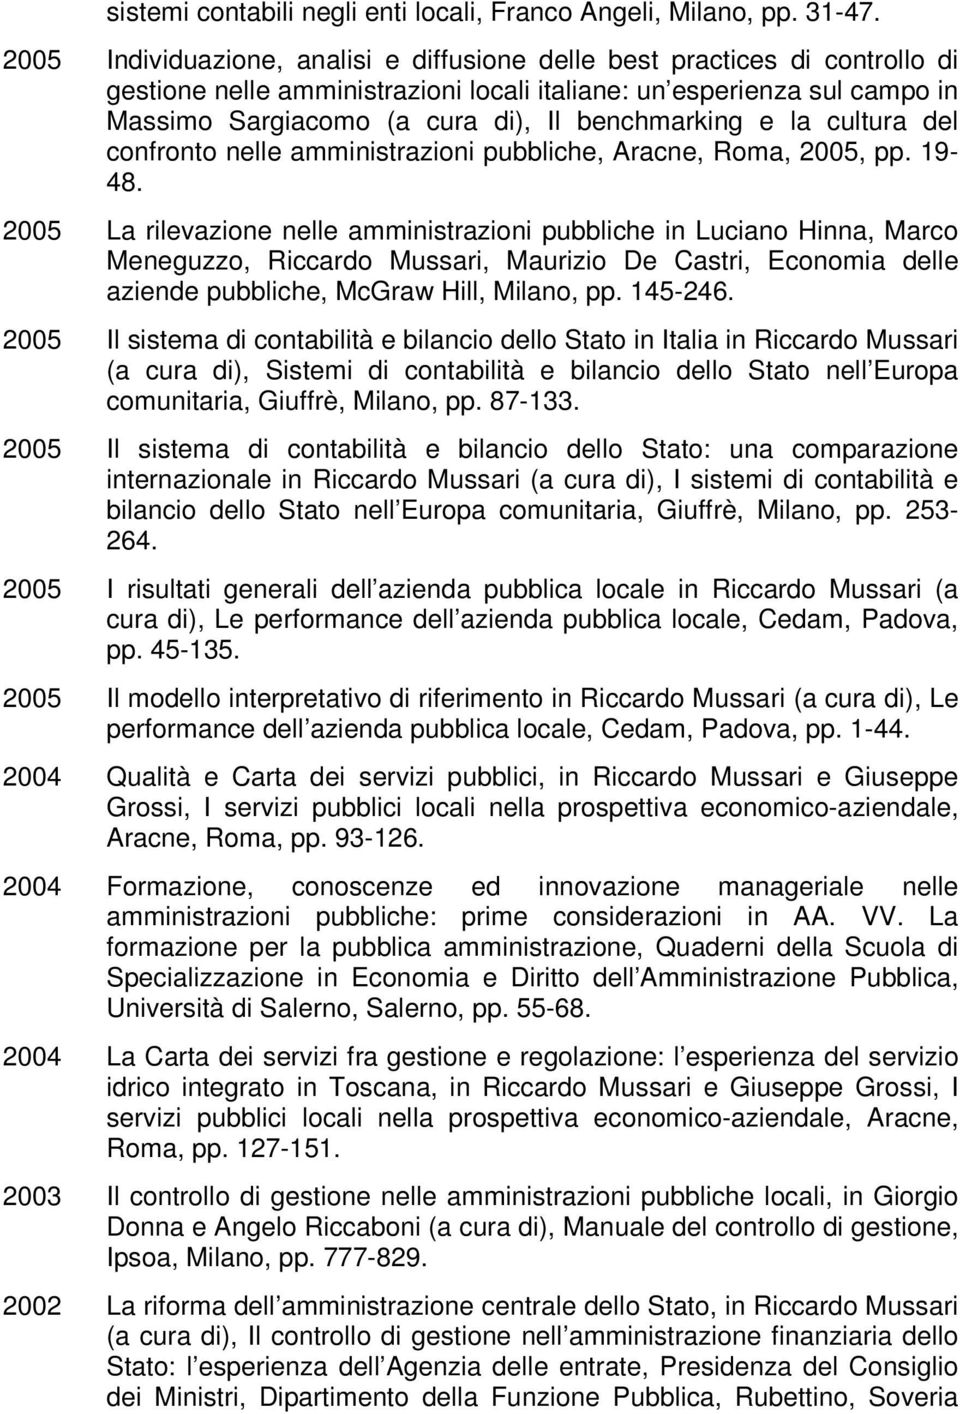 benchmarking e la cultura del confronto nelle amministrazioni pubbliche, Aracne, Roma, 2005, pp. 19-48.